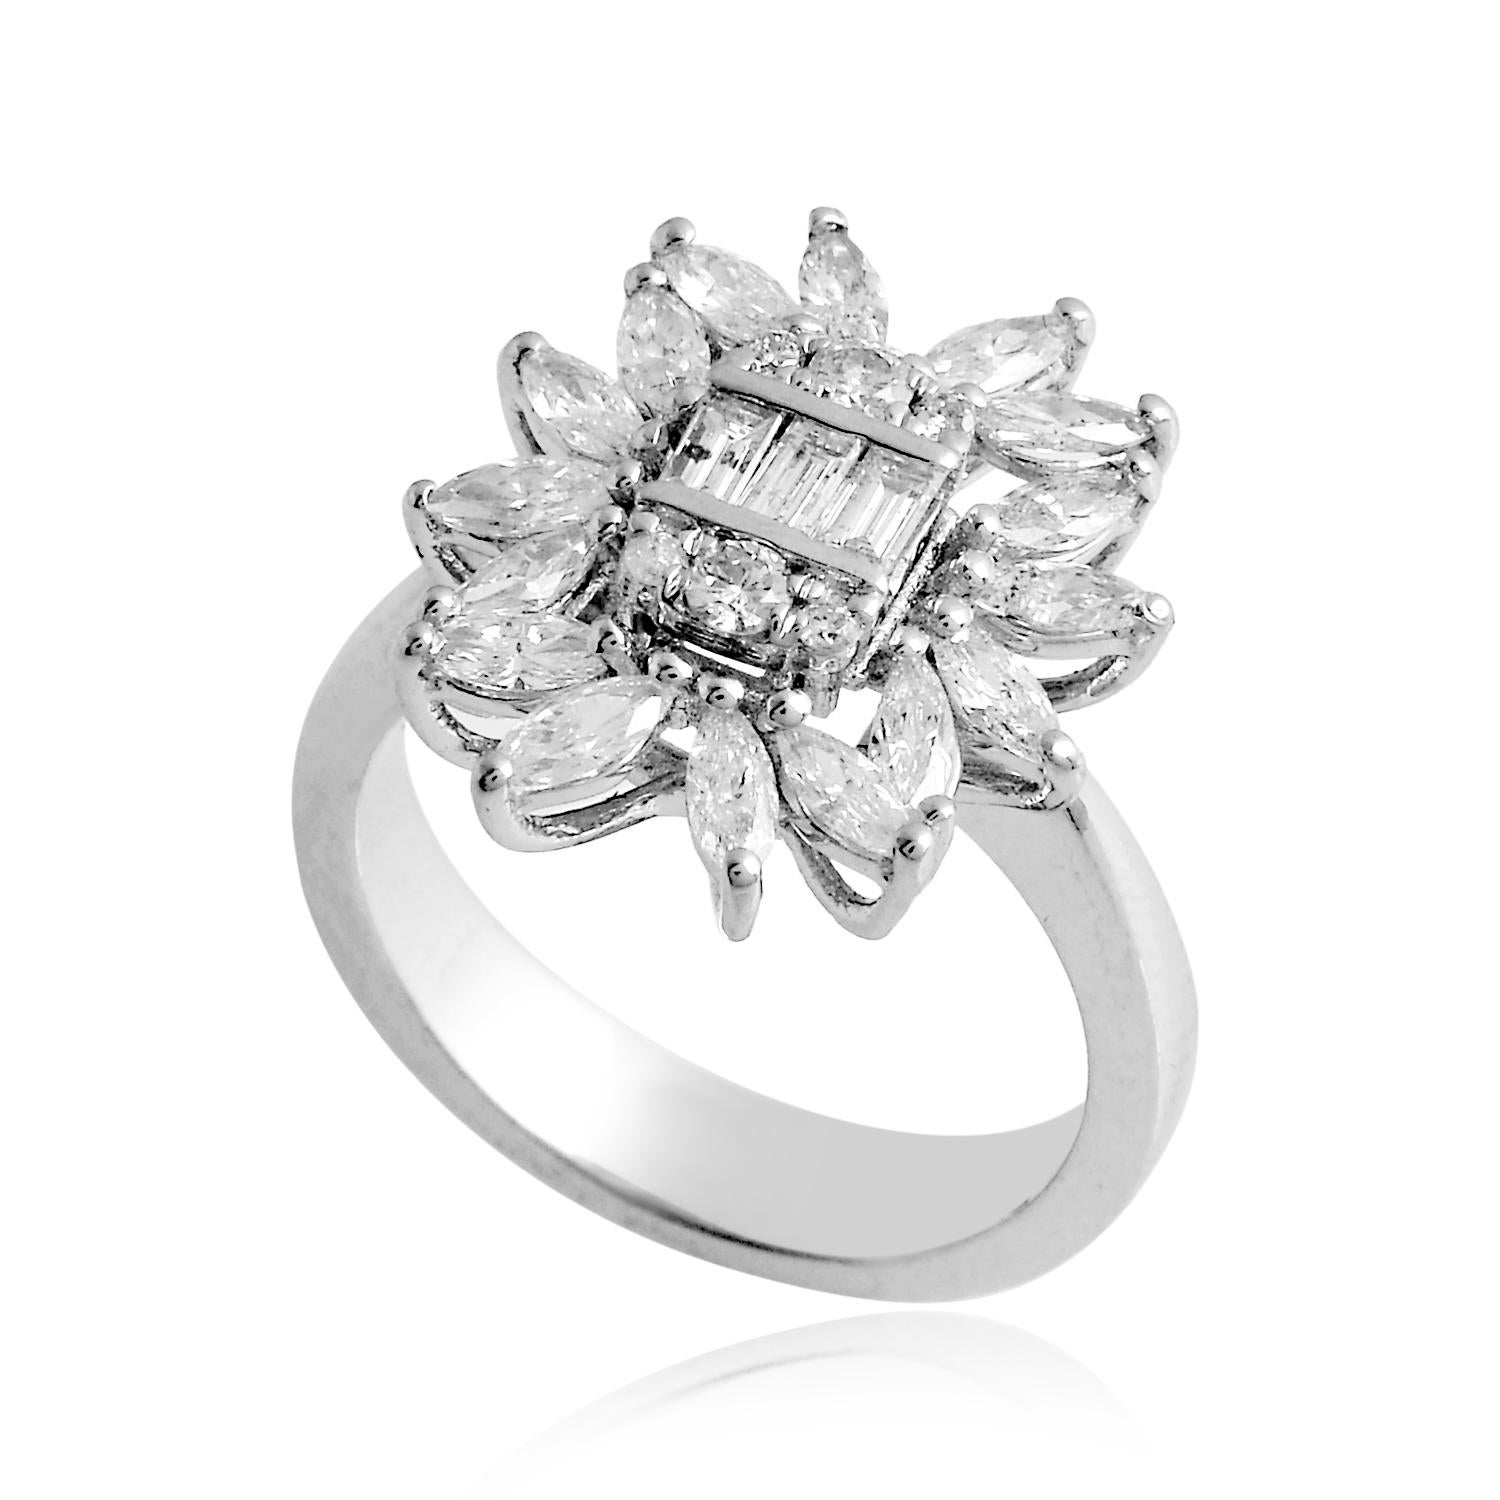 Code d'article :- CN-17814
Poids brut :- 7.34 gm
Or blanc massif 18k Poids :- 7.07 gm
Poids du diamant naturel :- 1.35 carat  ( DIAMANT MOYEN DE PURETÉ SI1-SI2 ET DE COULEUR H-I )
Taille de l'anneau : - 7 US & toutes les tailles d'anneaux